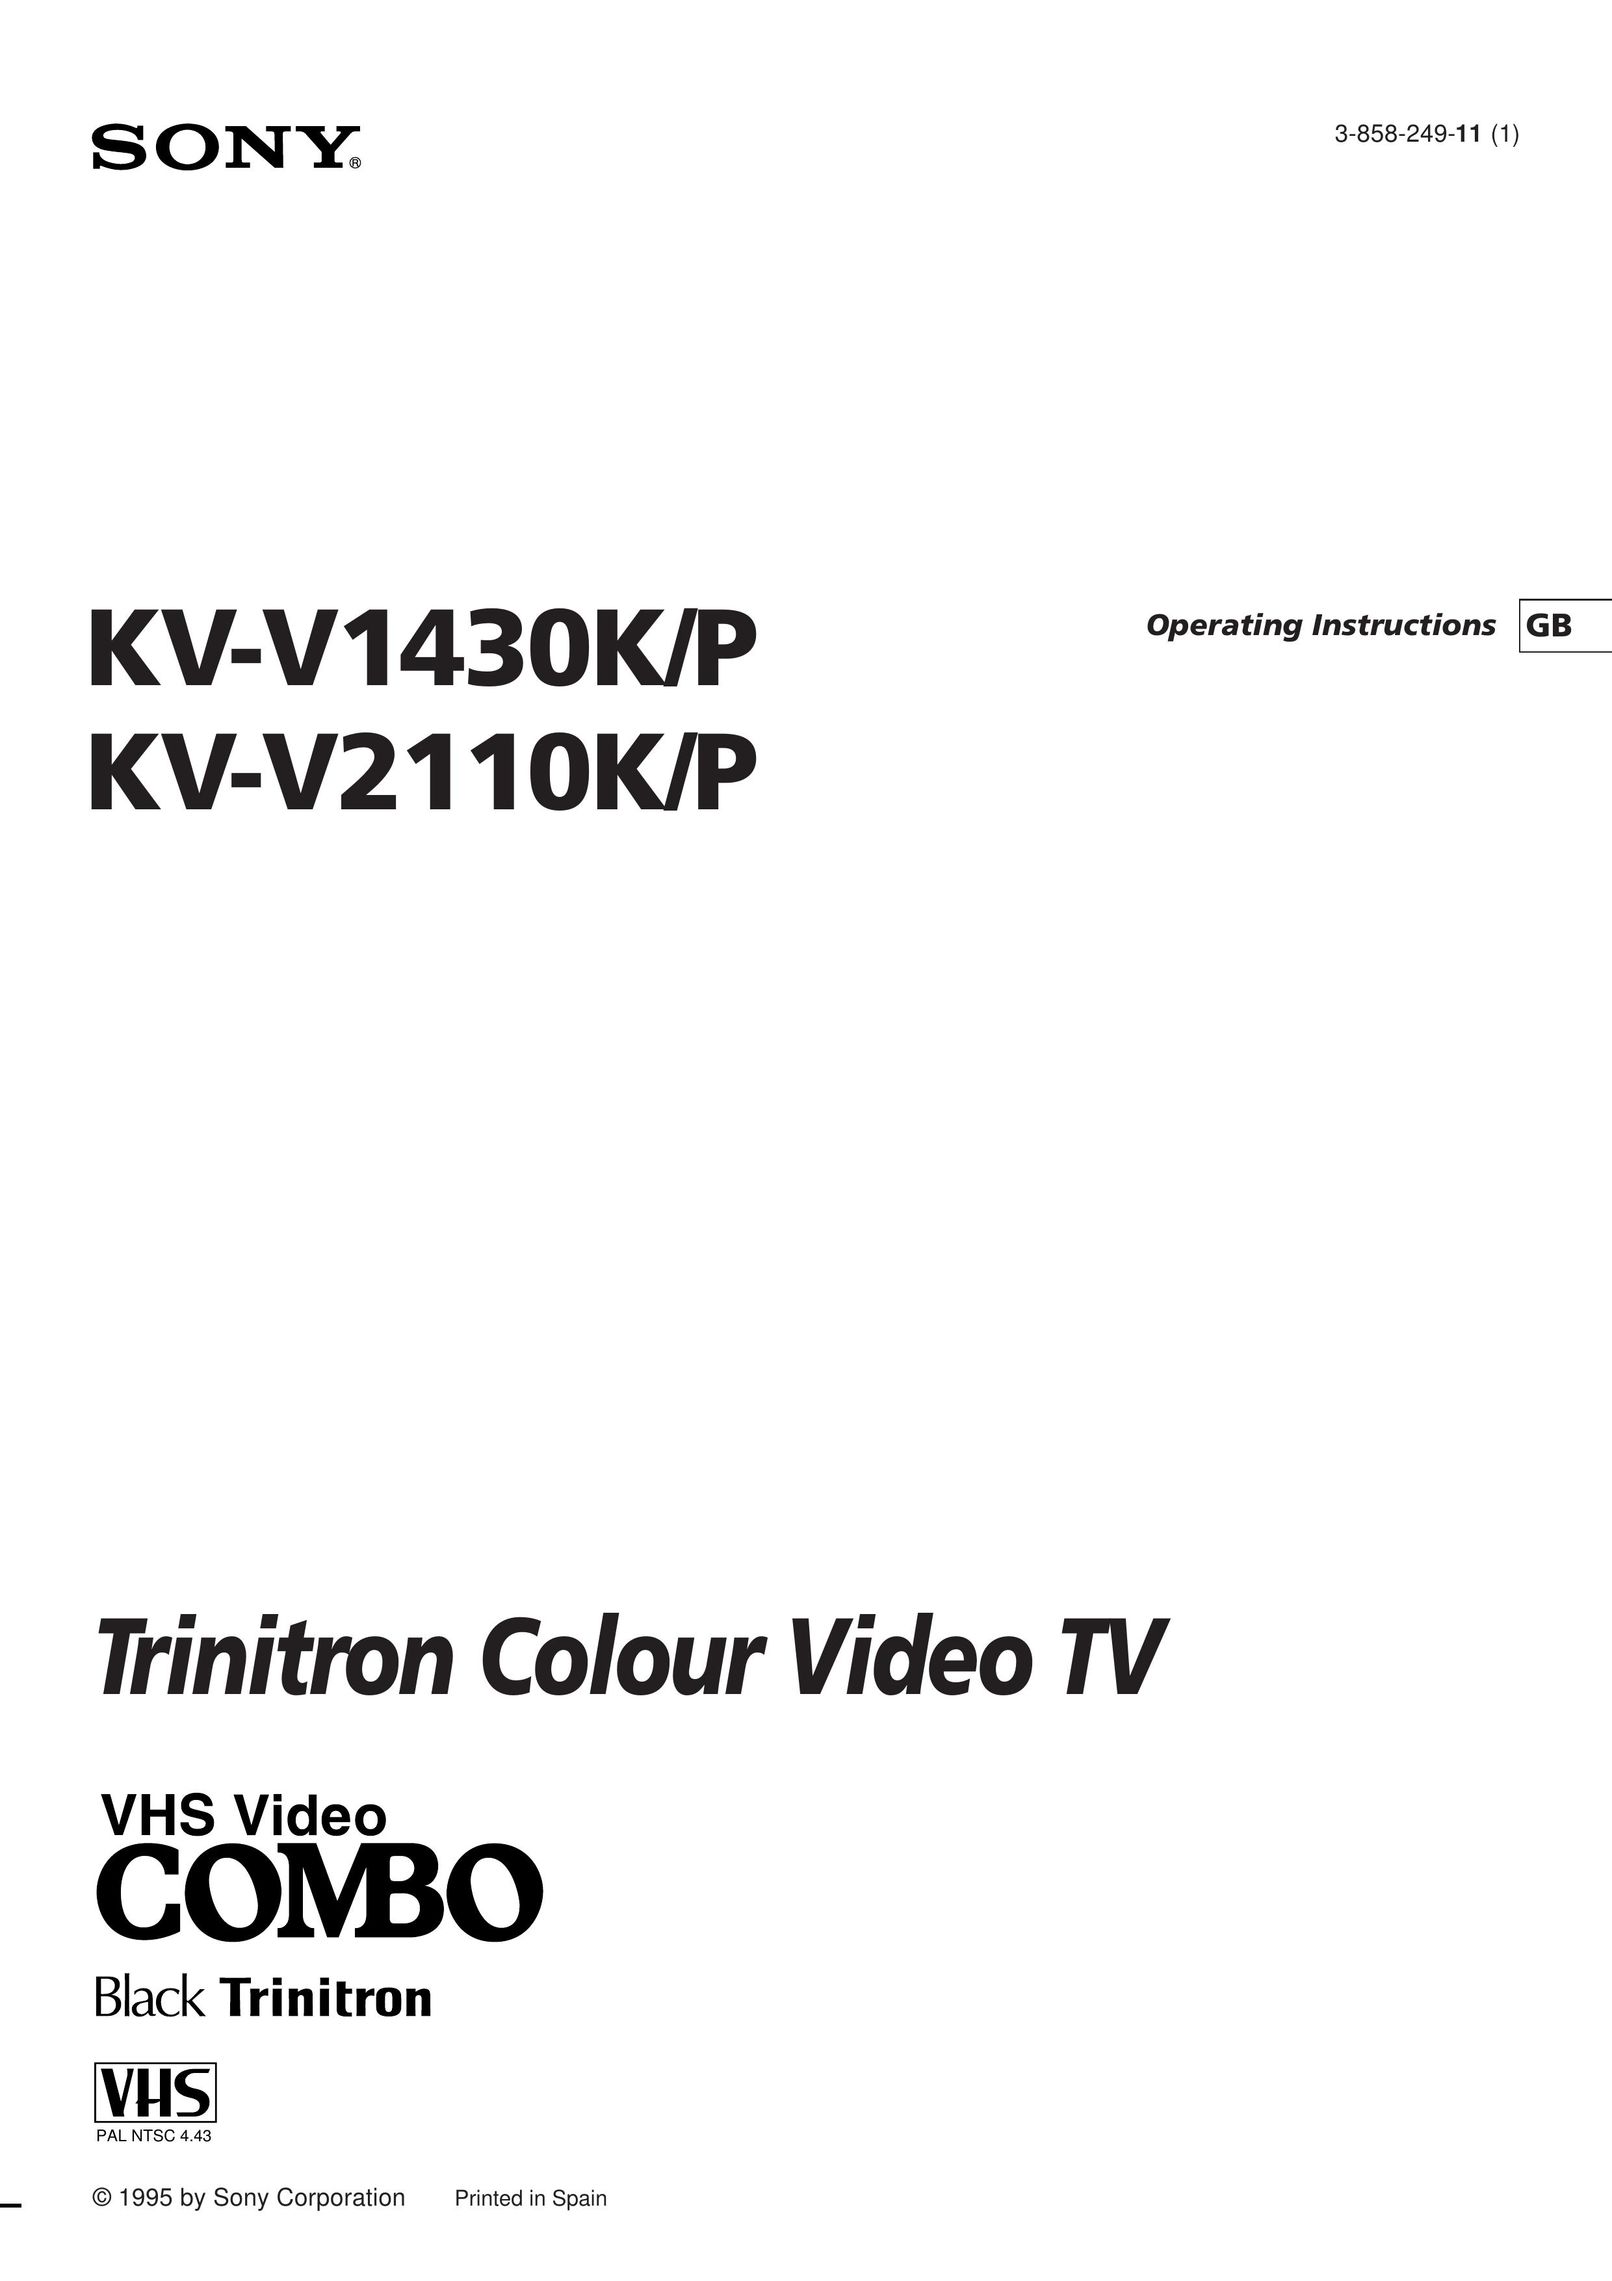 Sony KV-V2110P TV VCR Combo User Manual